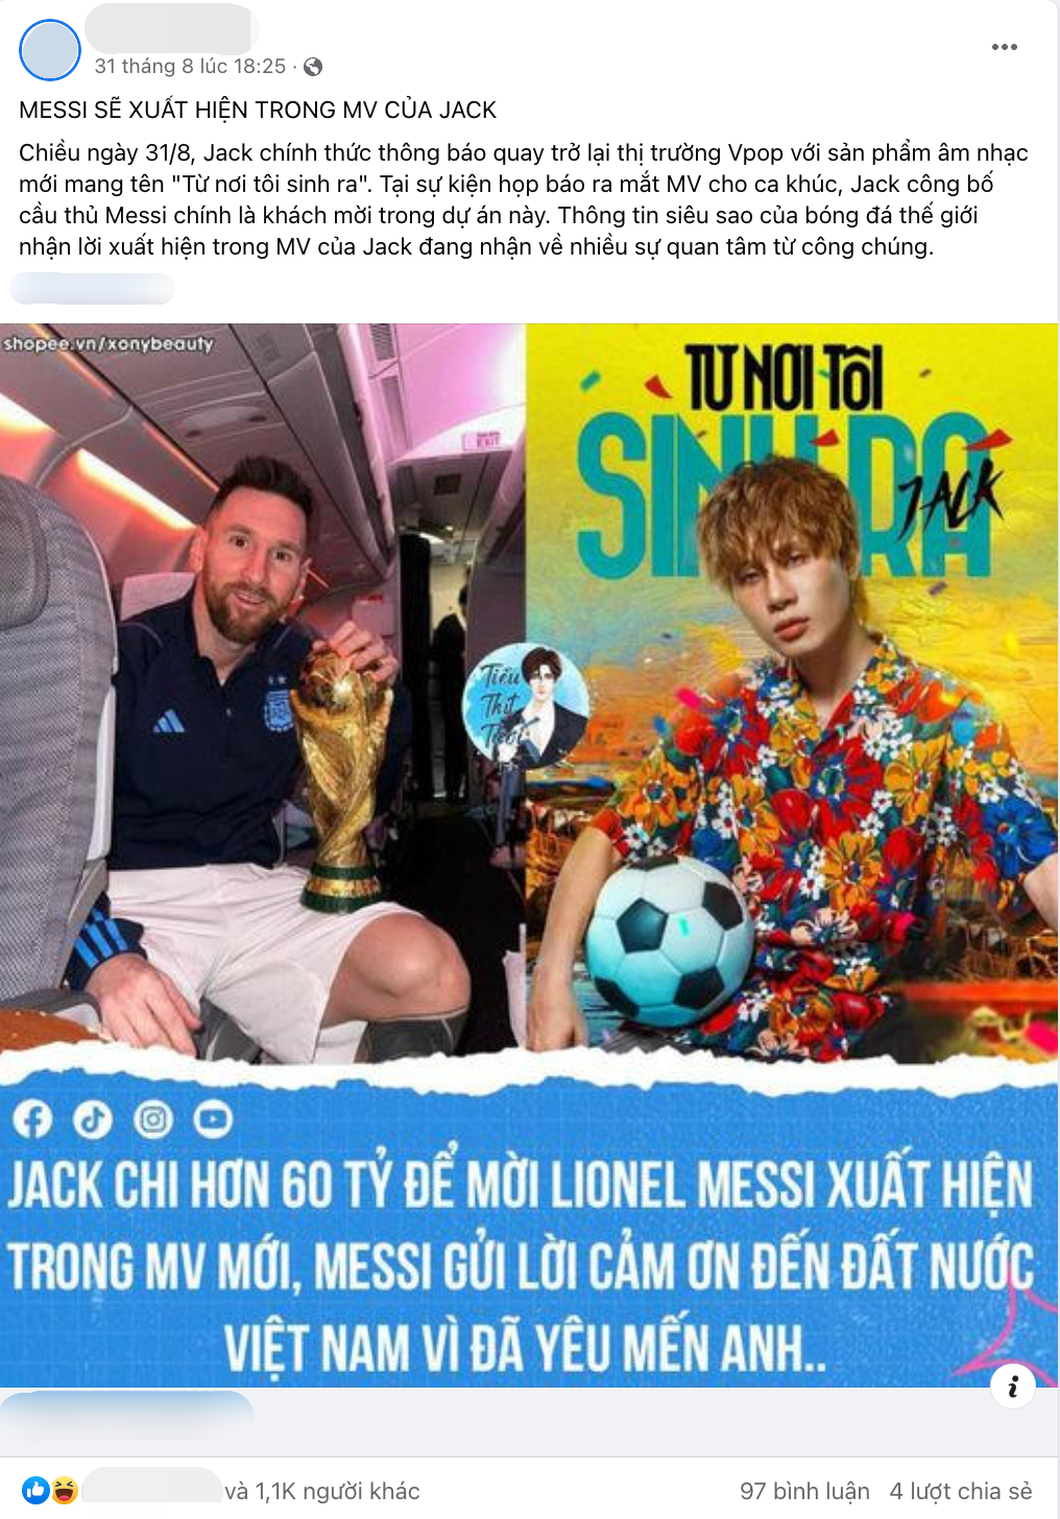 Một trong các fanpage trên mạng xã hội đăng tin đồn về số tiền được chi để gặp Messi vào 18h25 tối 31-8, trước khi MV của Jack ra mắt - Ảnh: Chụp màn hình